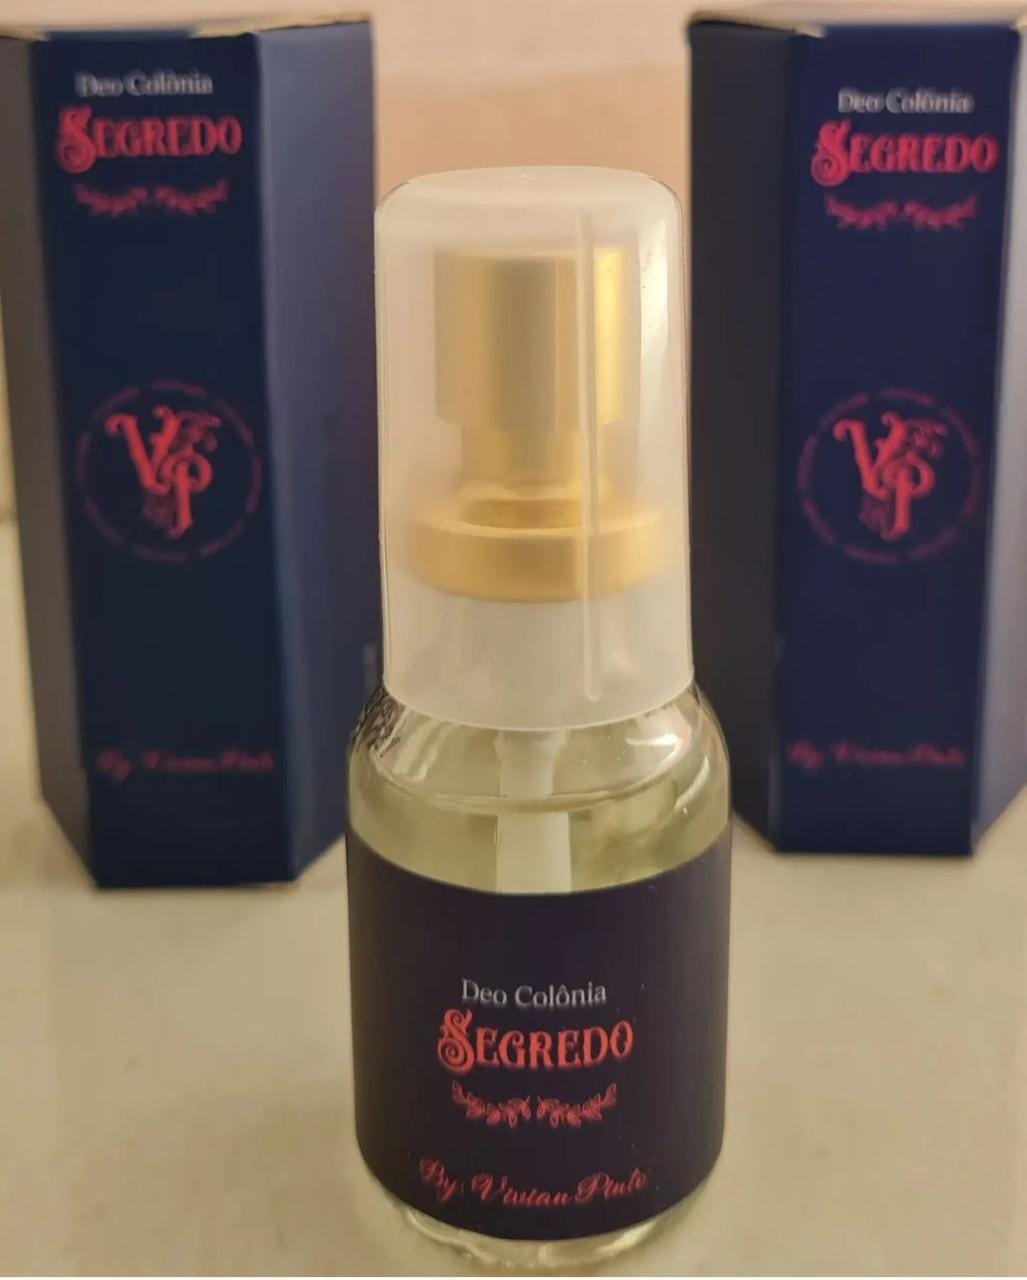 Feromônios sexuais: em agradecimento e presente para o dia da mulher, Vivian Pinto coloca perfume Segredo a R$ 25,00